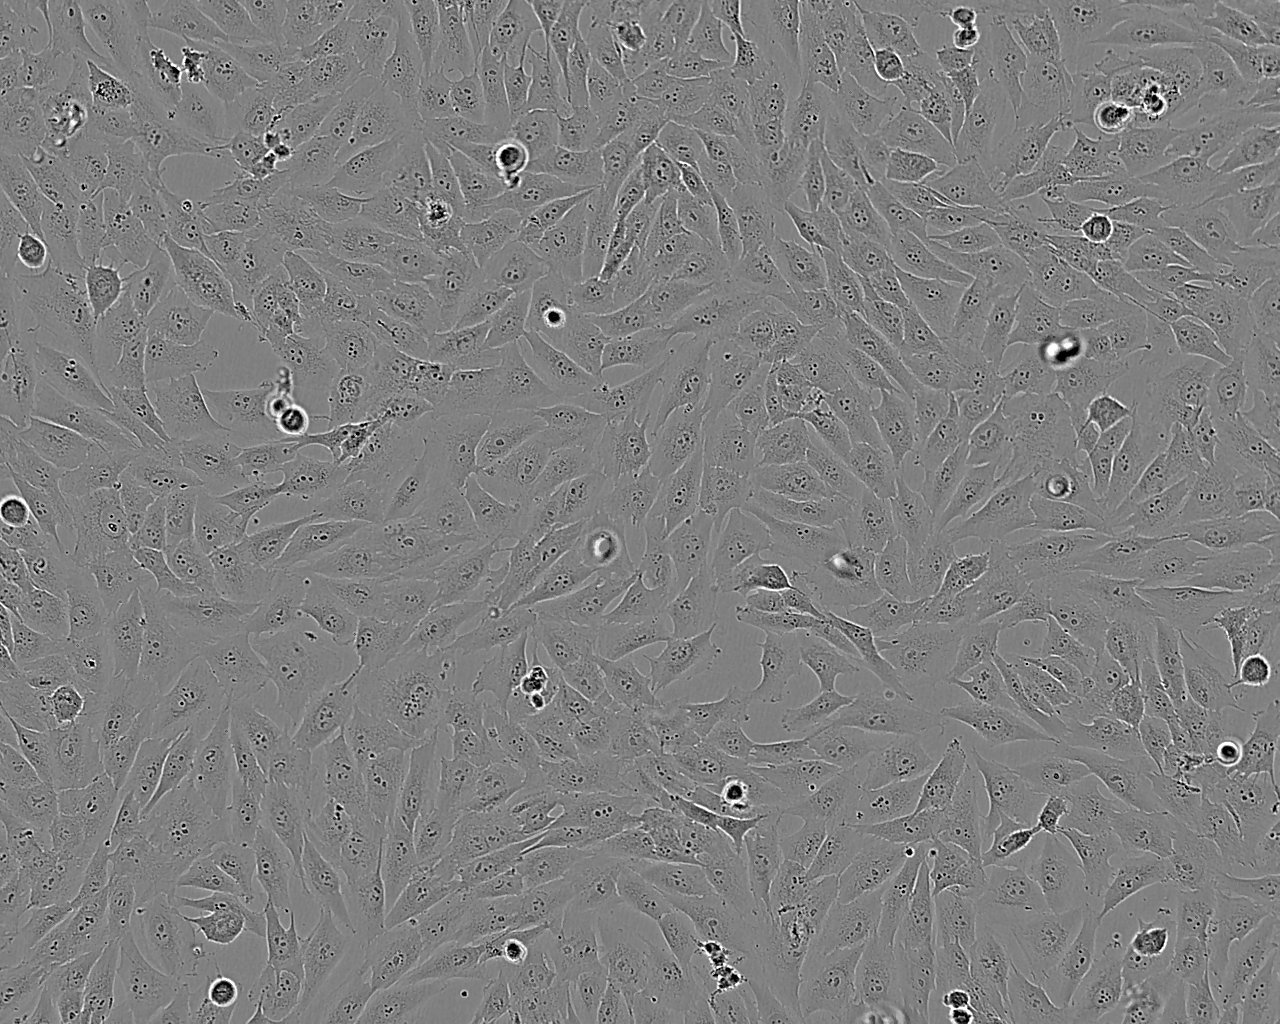 BHK-21 Cell:仓鼠肾成纤维细胞系